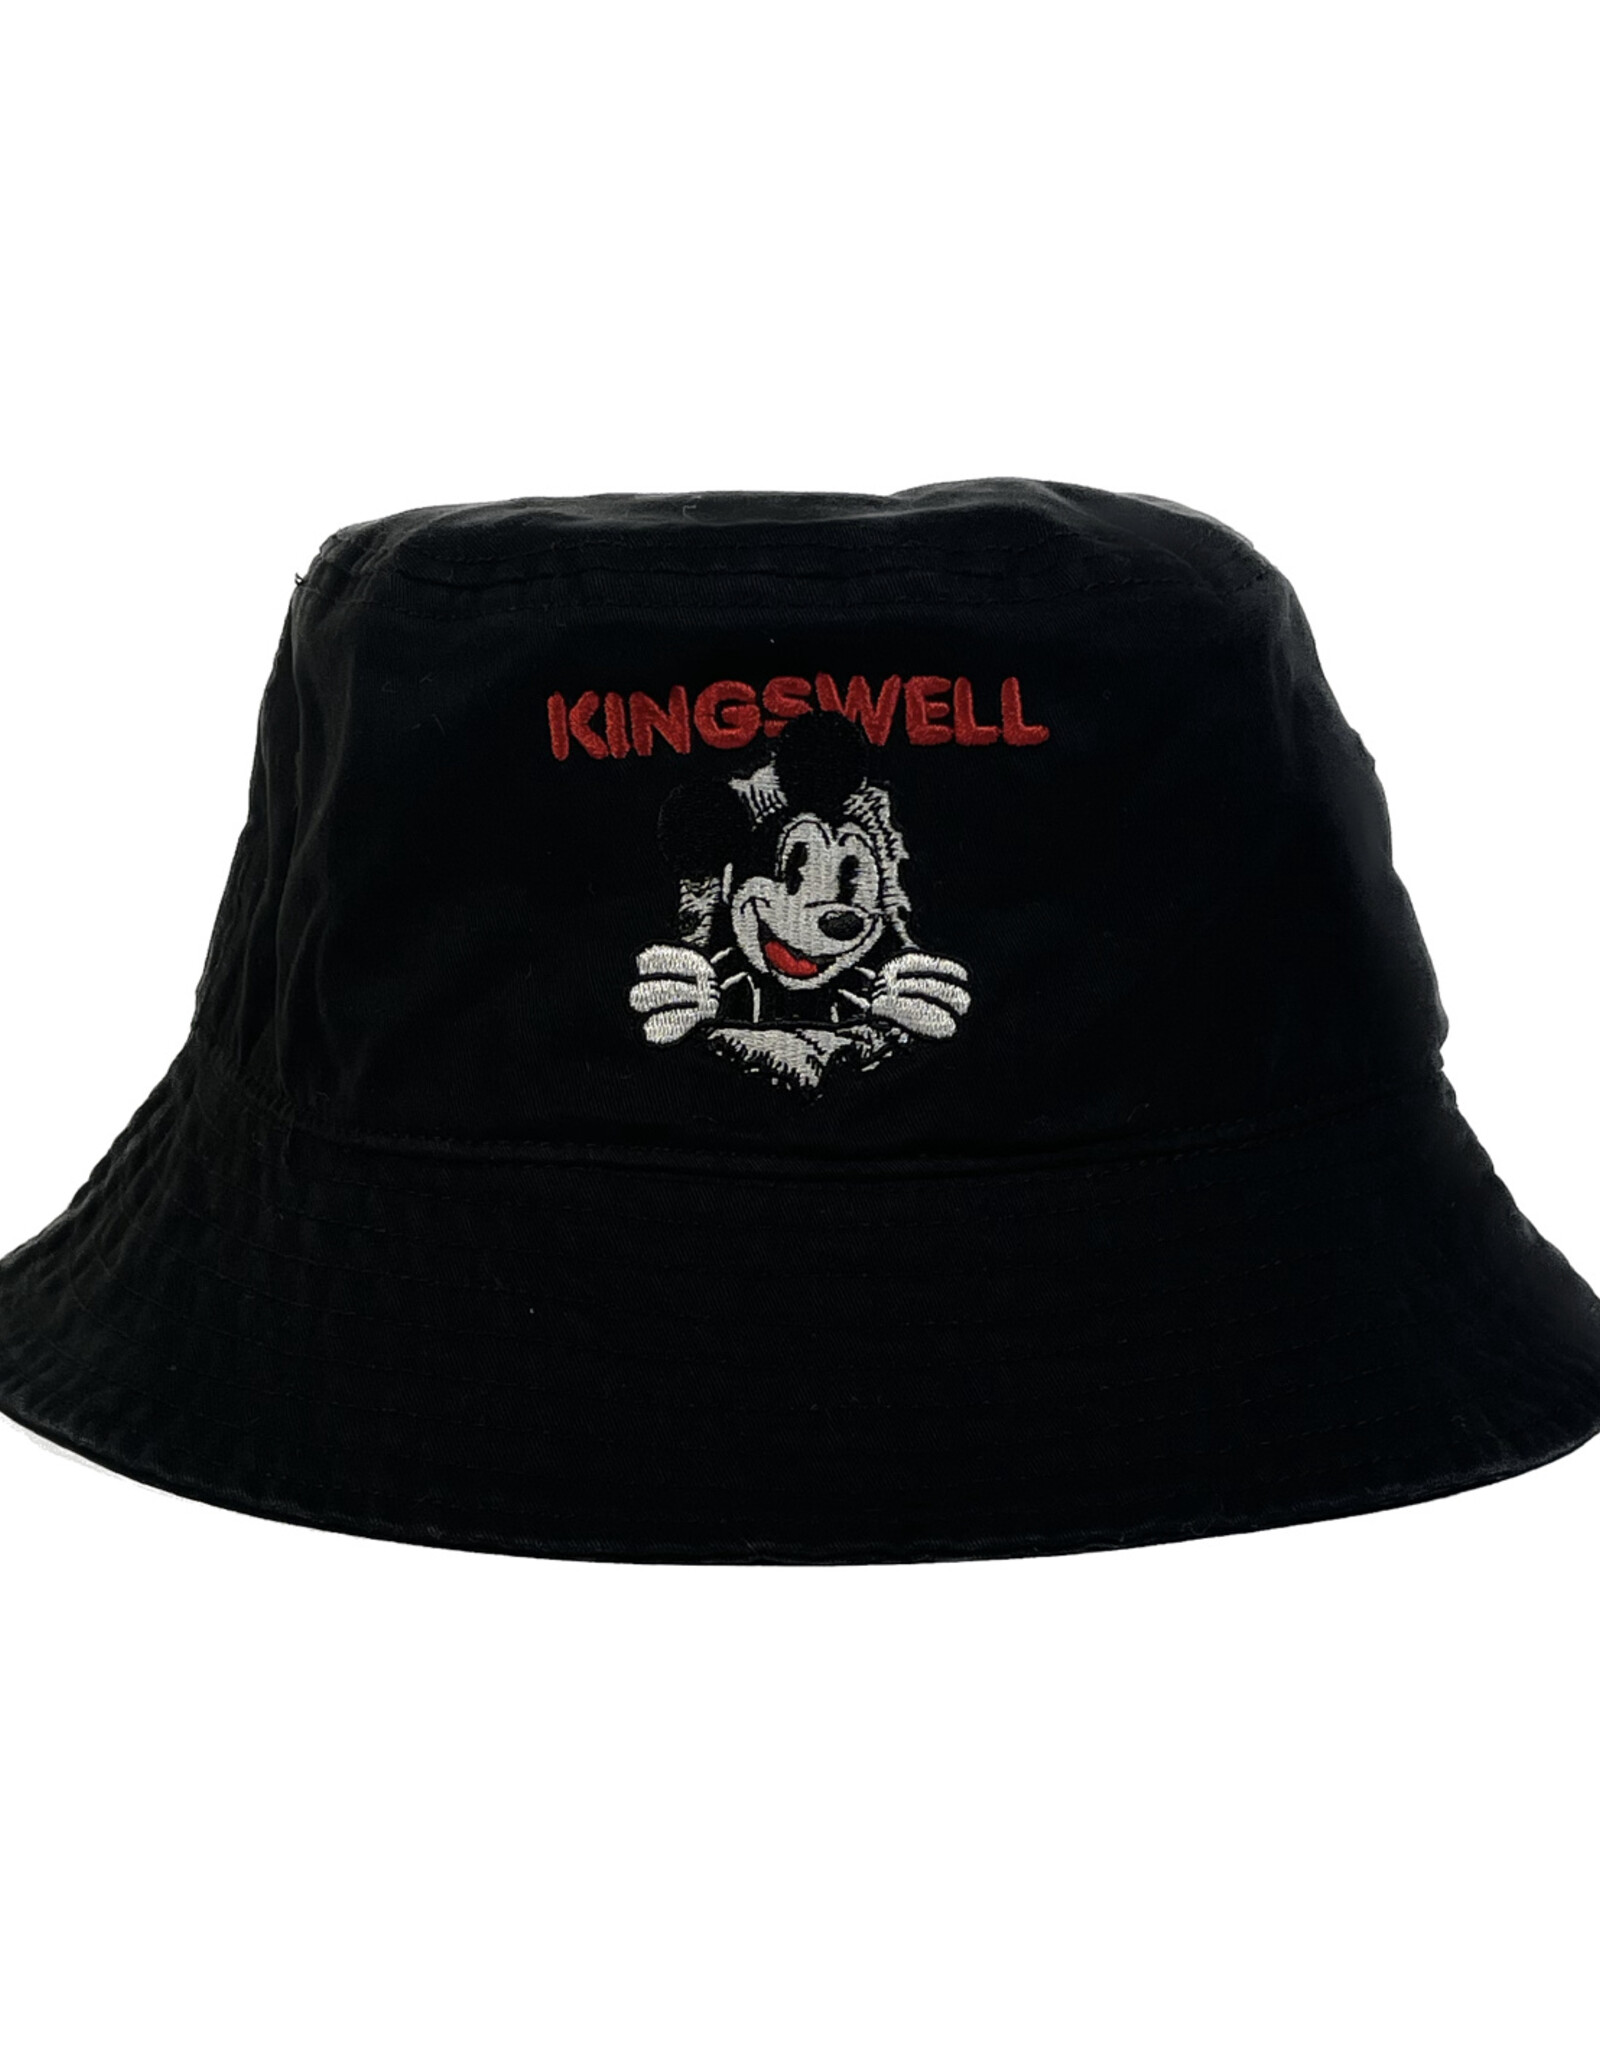 KINGSWELL KINGSWELL RIPPER BUCKET HAT - BLACK